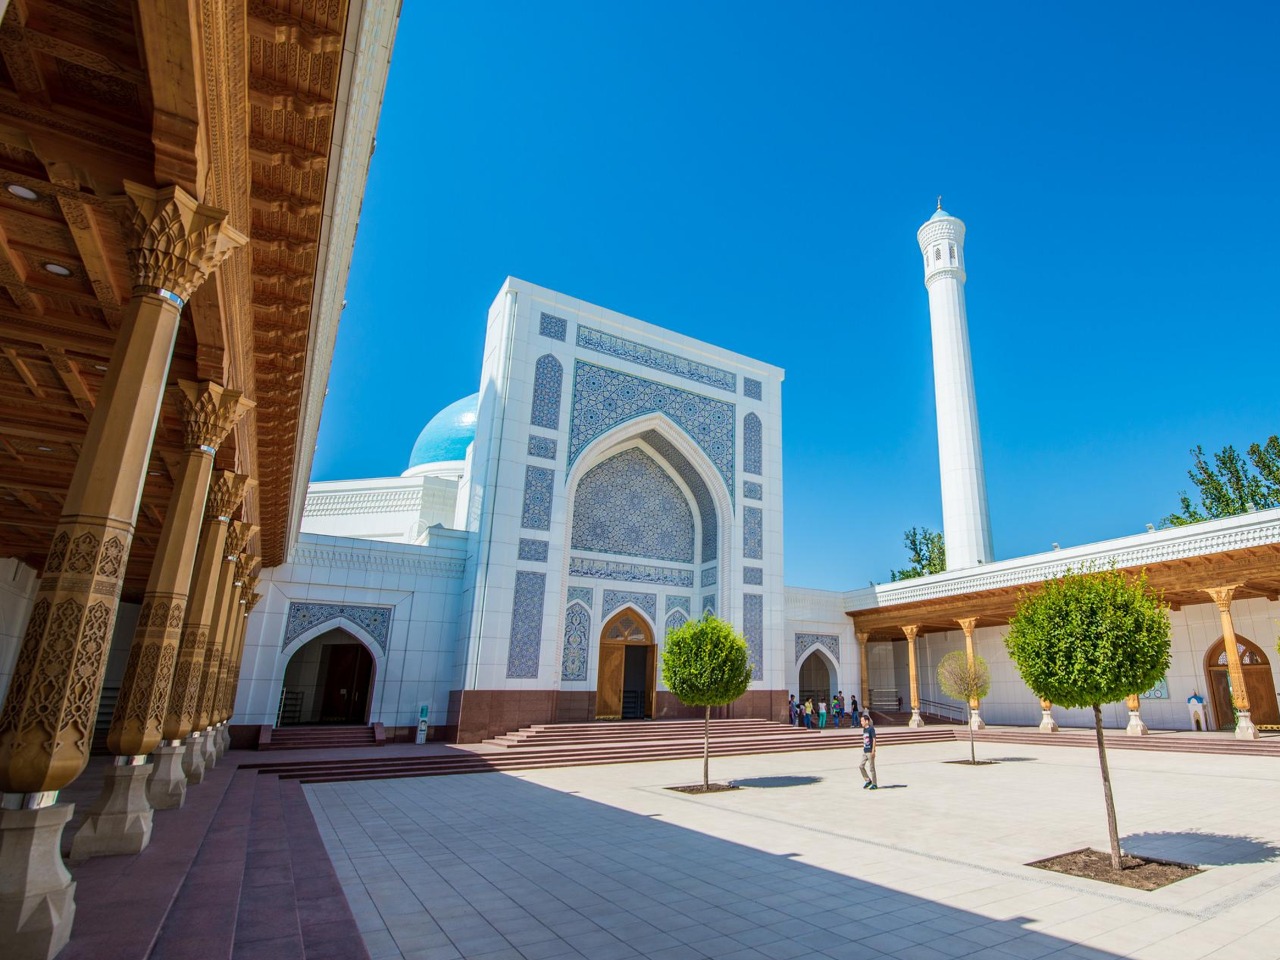 Ташкент: яркая мозаика узбекской столицы | Цена 100€, отзывы, описание экскурсии